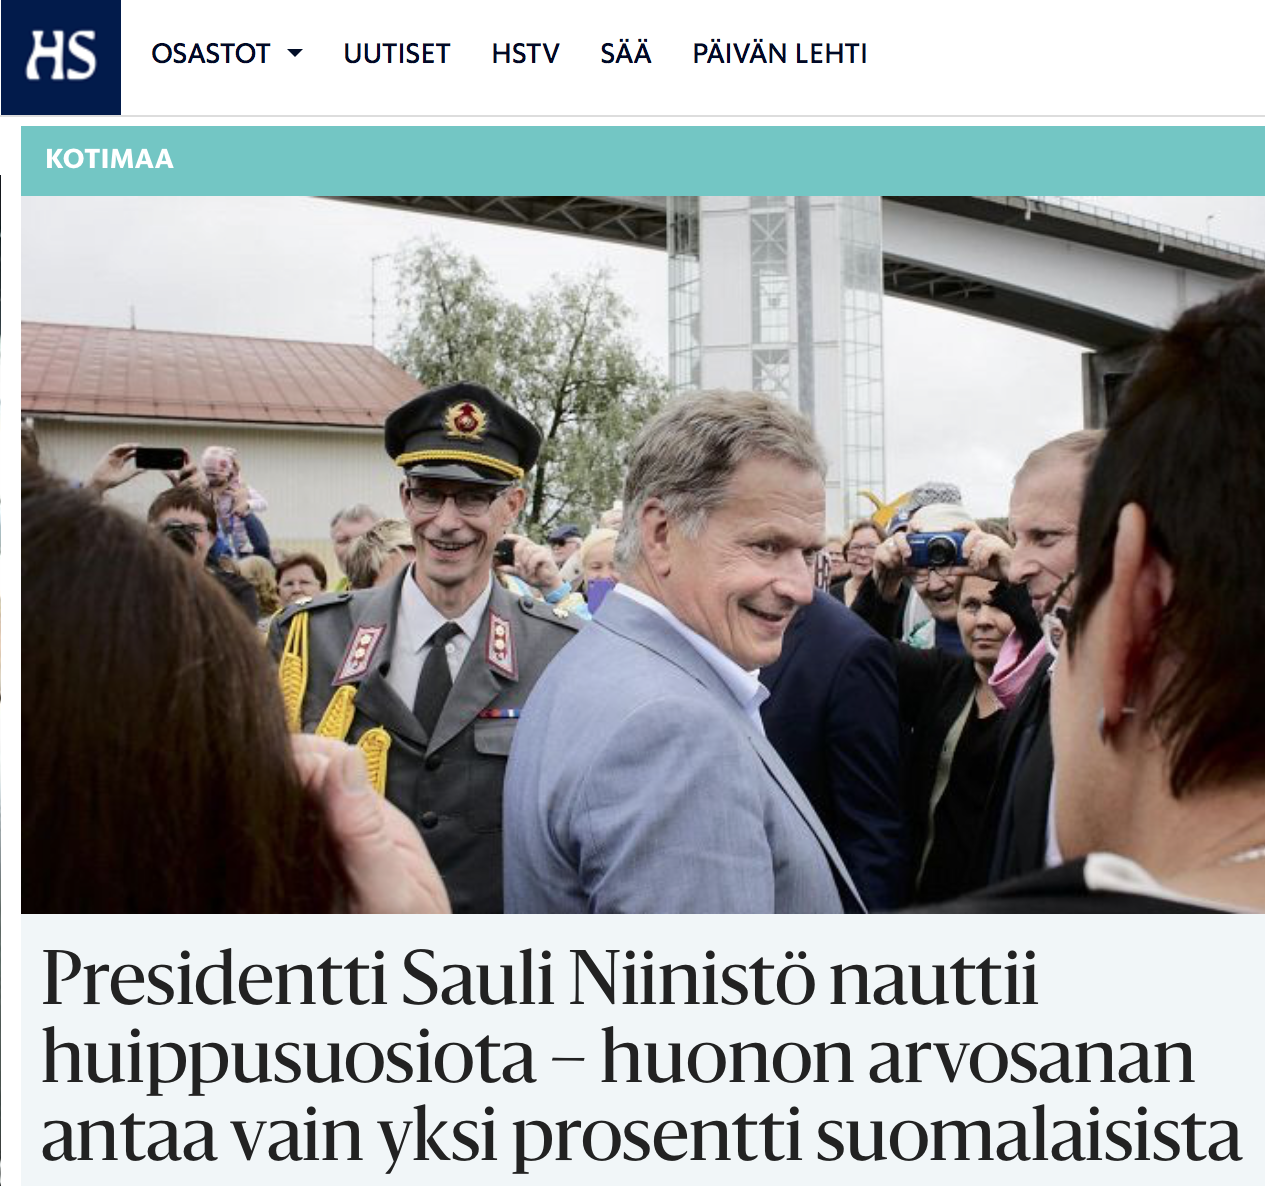 Presidentti Sauli Niinistö nauttii huippusuosiota HS 3.7 2016mavbild 2016-07-03 kl. 07.14.09